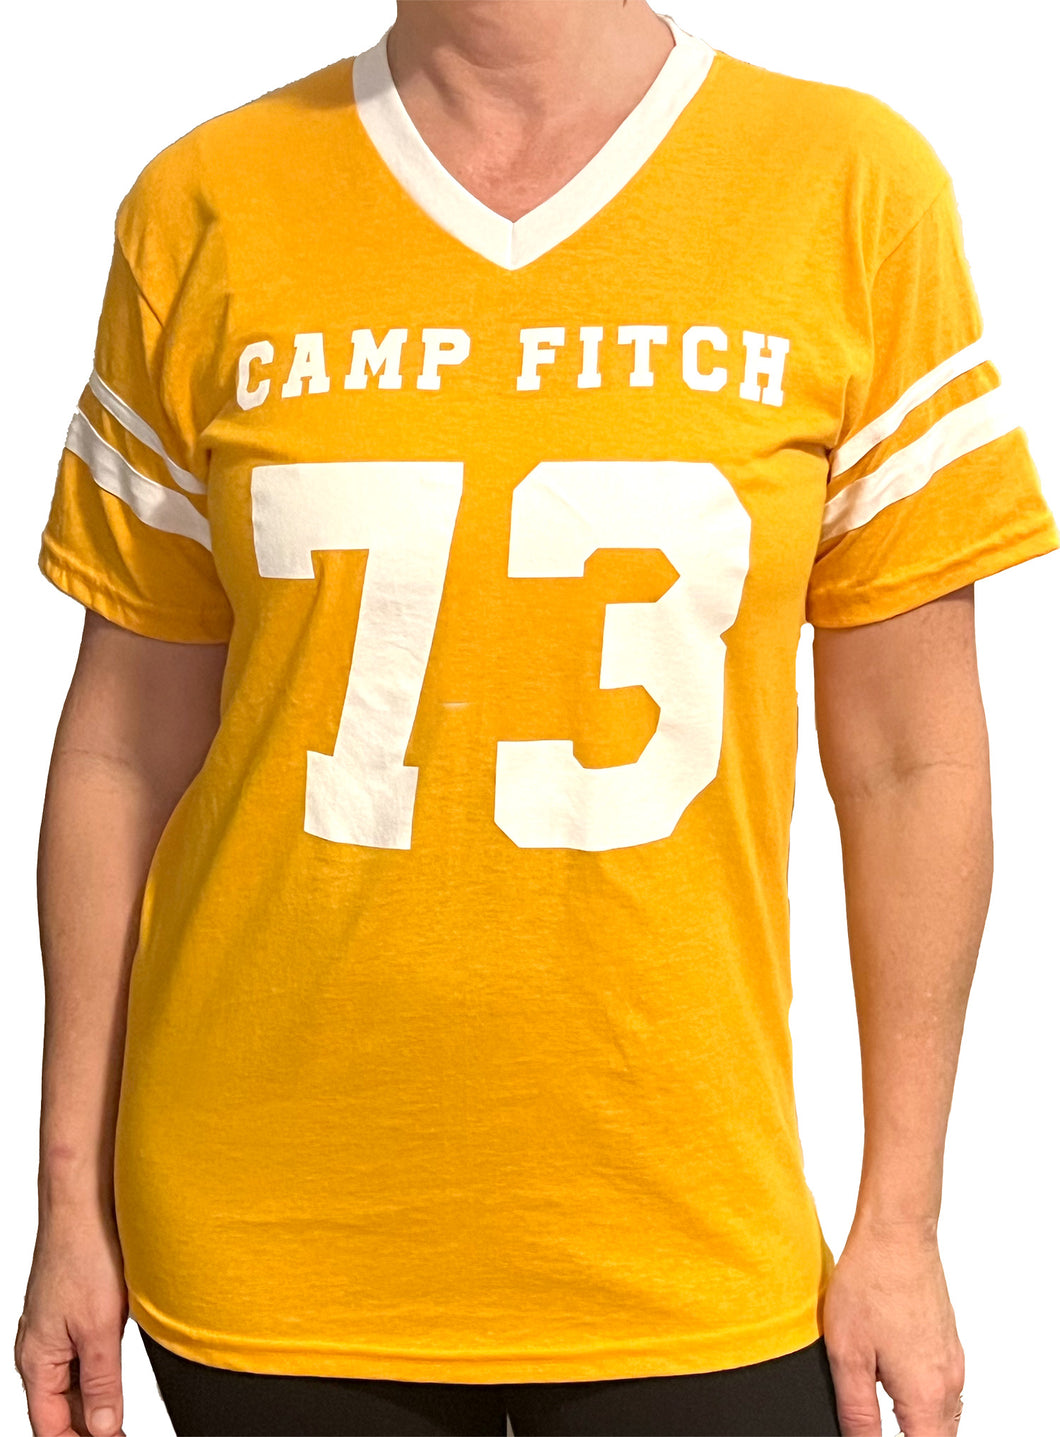 Camp Fitch 